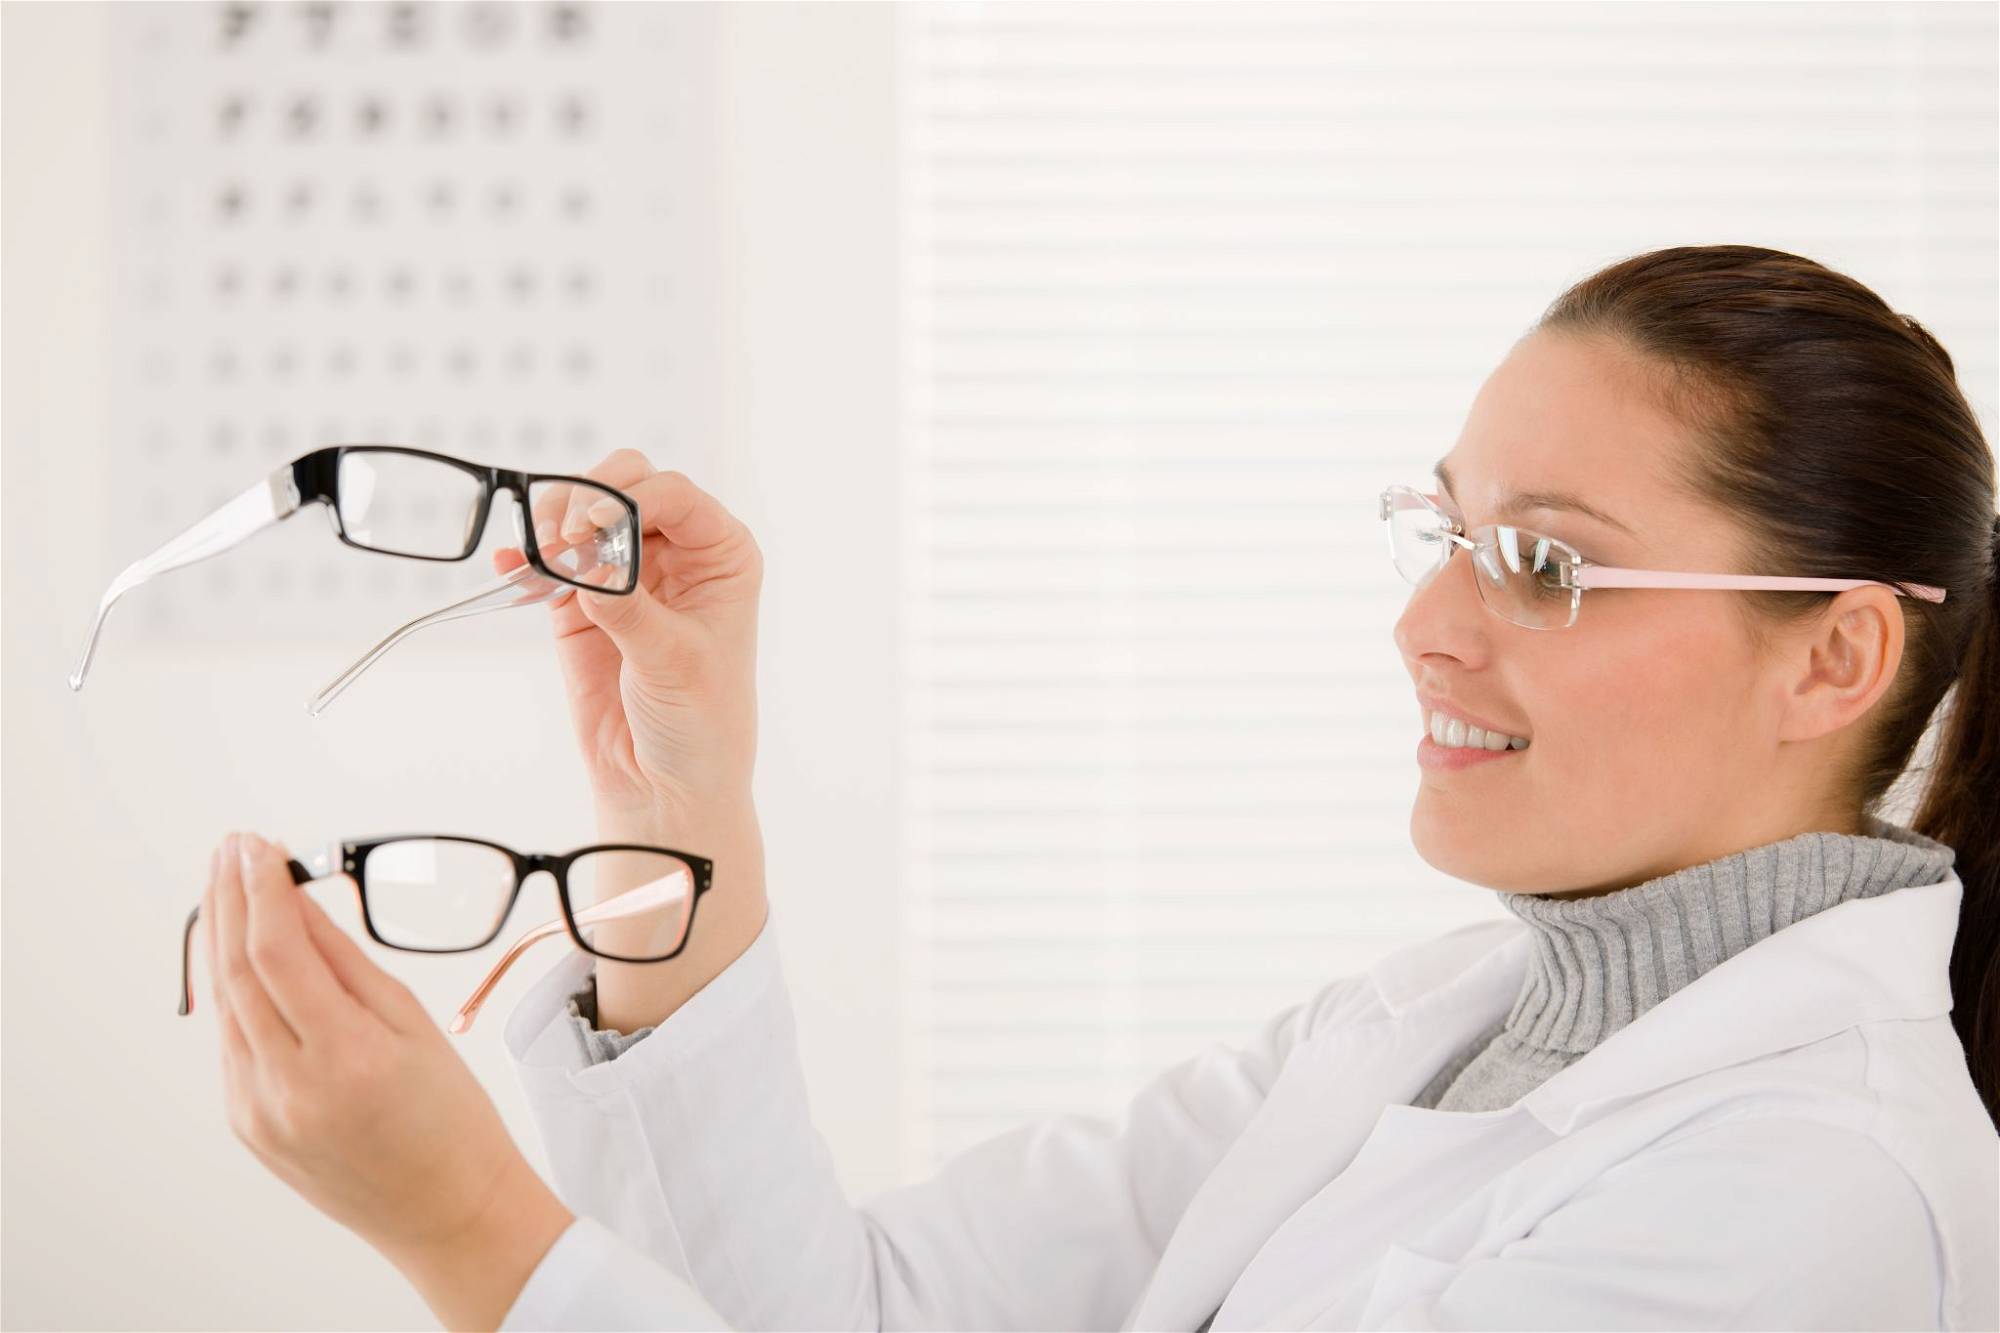 Врач подбирающий очки. Оптика в очках. Сложные очки при астигматизме. Очковая коррекция зрения. Девушка в очках у окулиста.